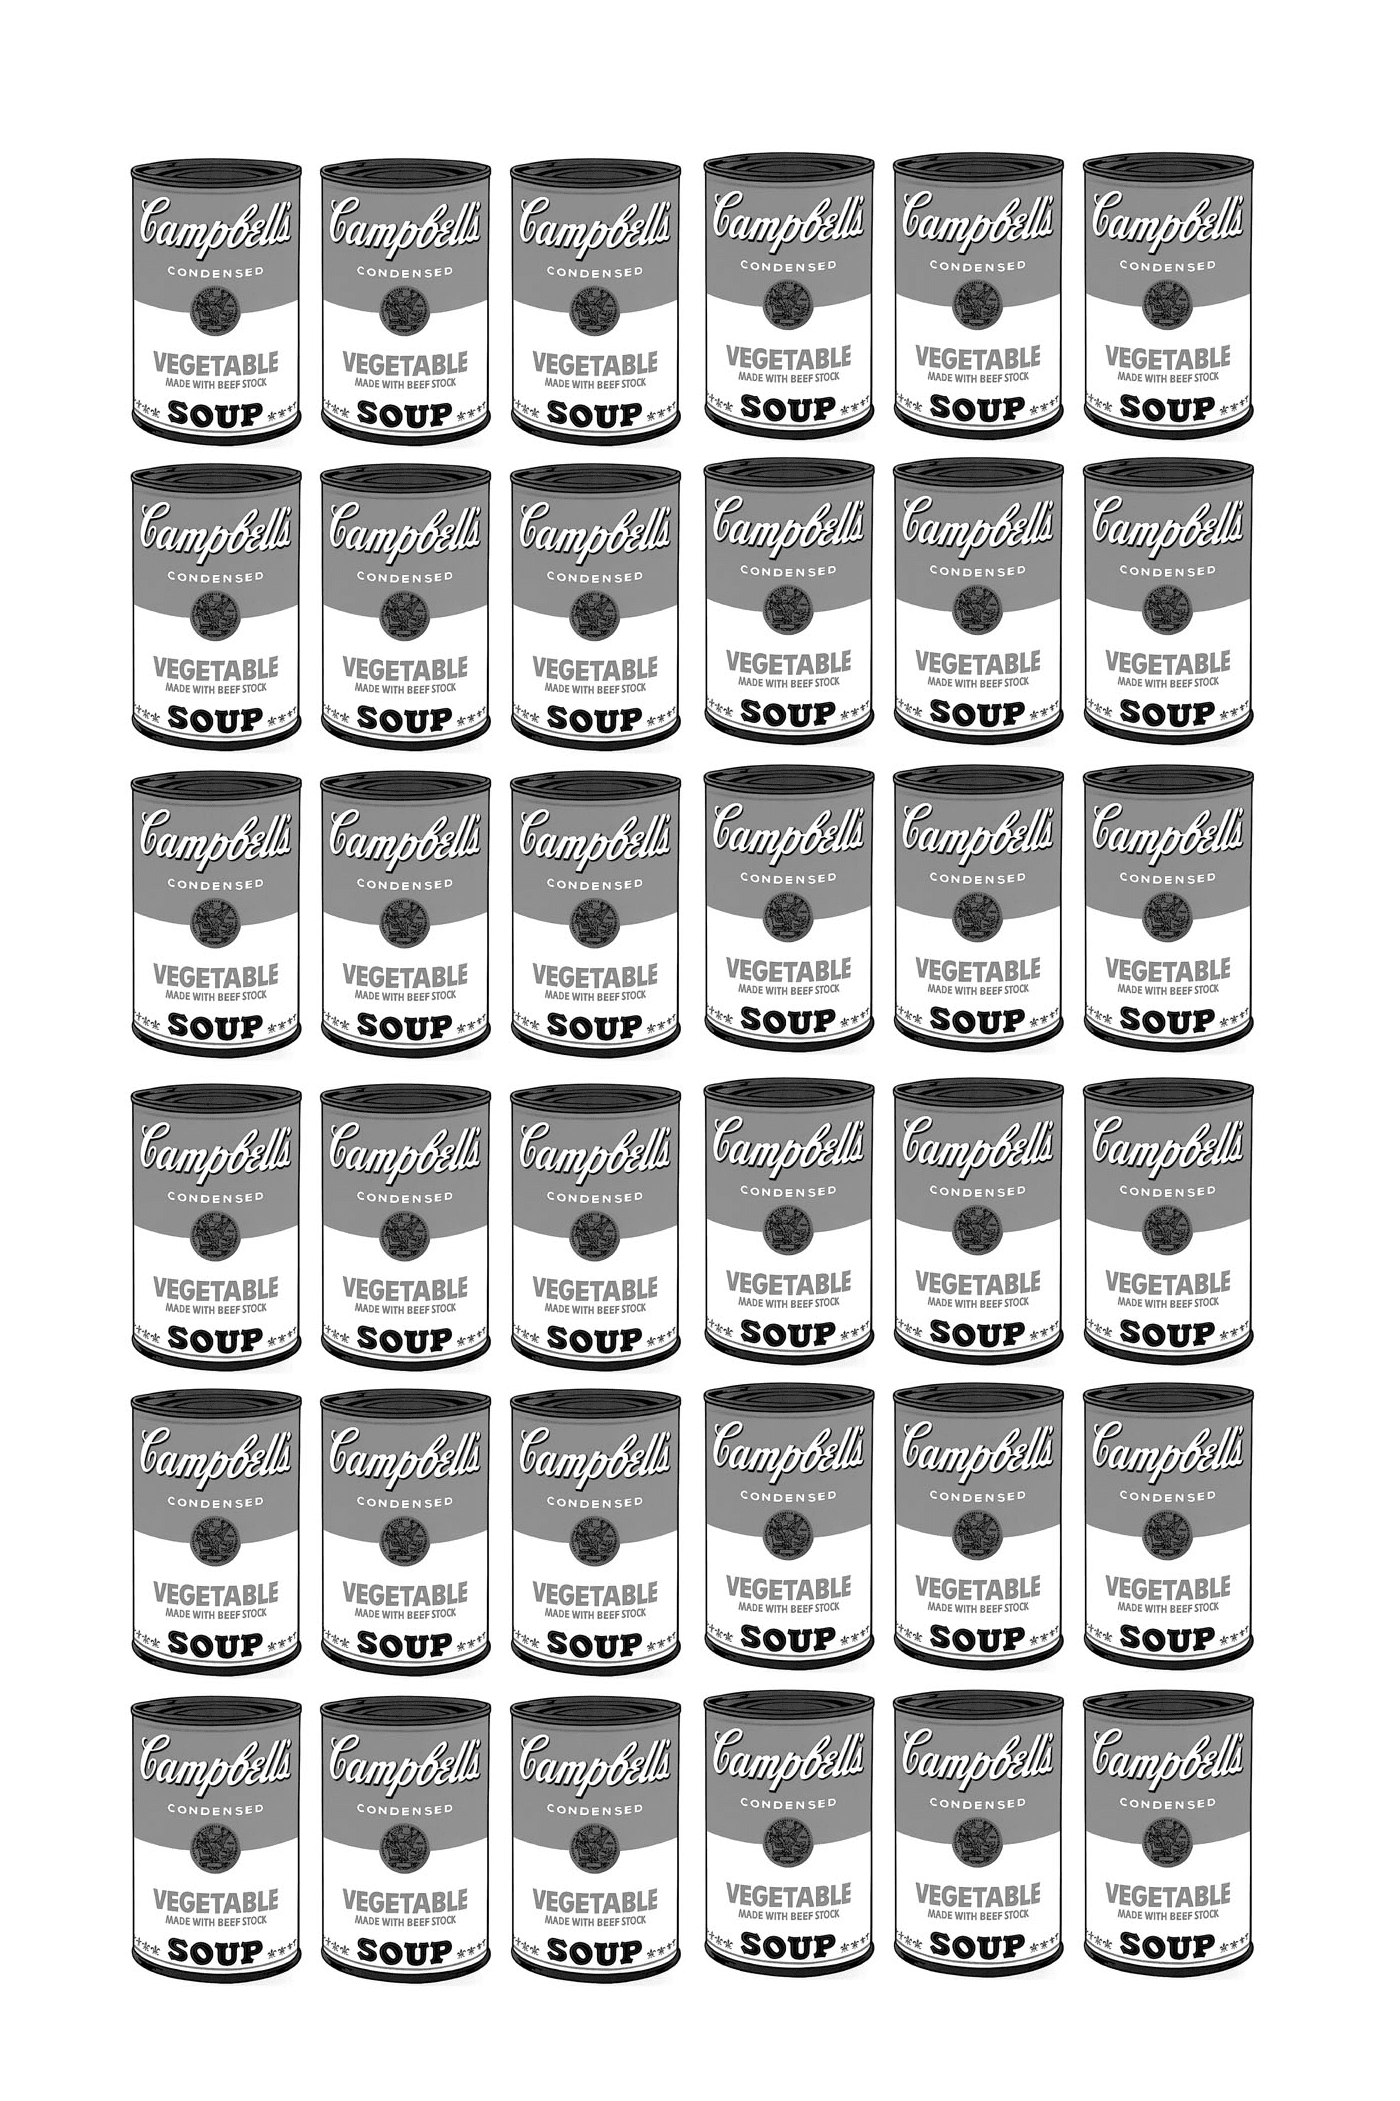  eine Serie von Campbell Suppenboxen ganz schwarz und weiß nach Warhol 